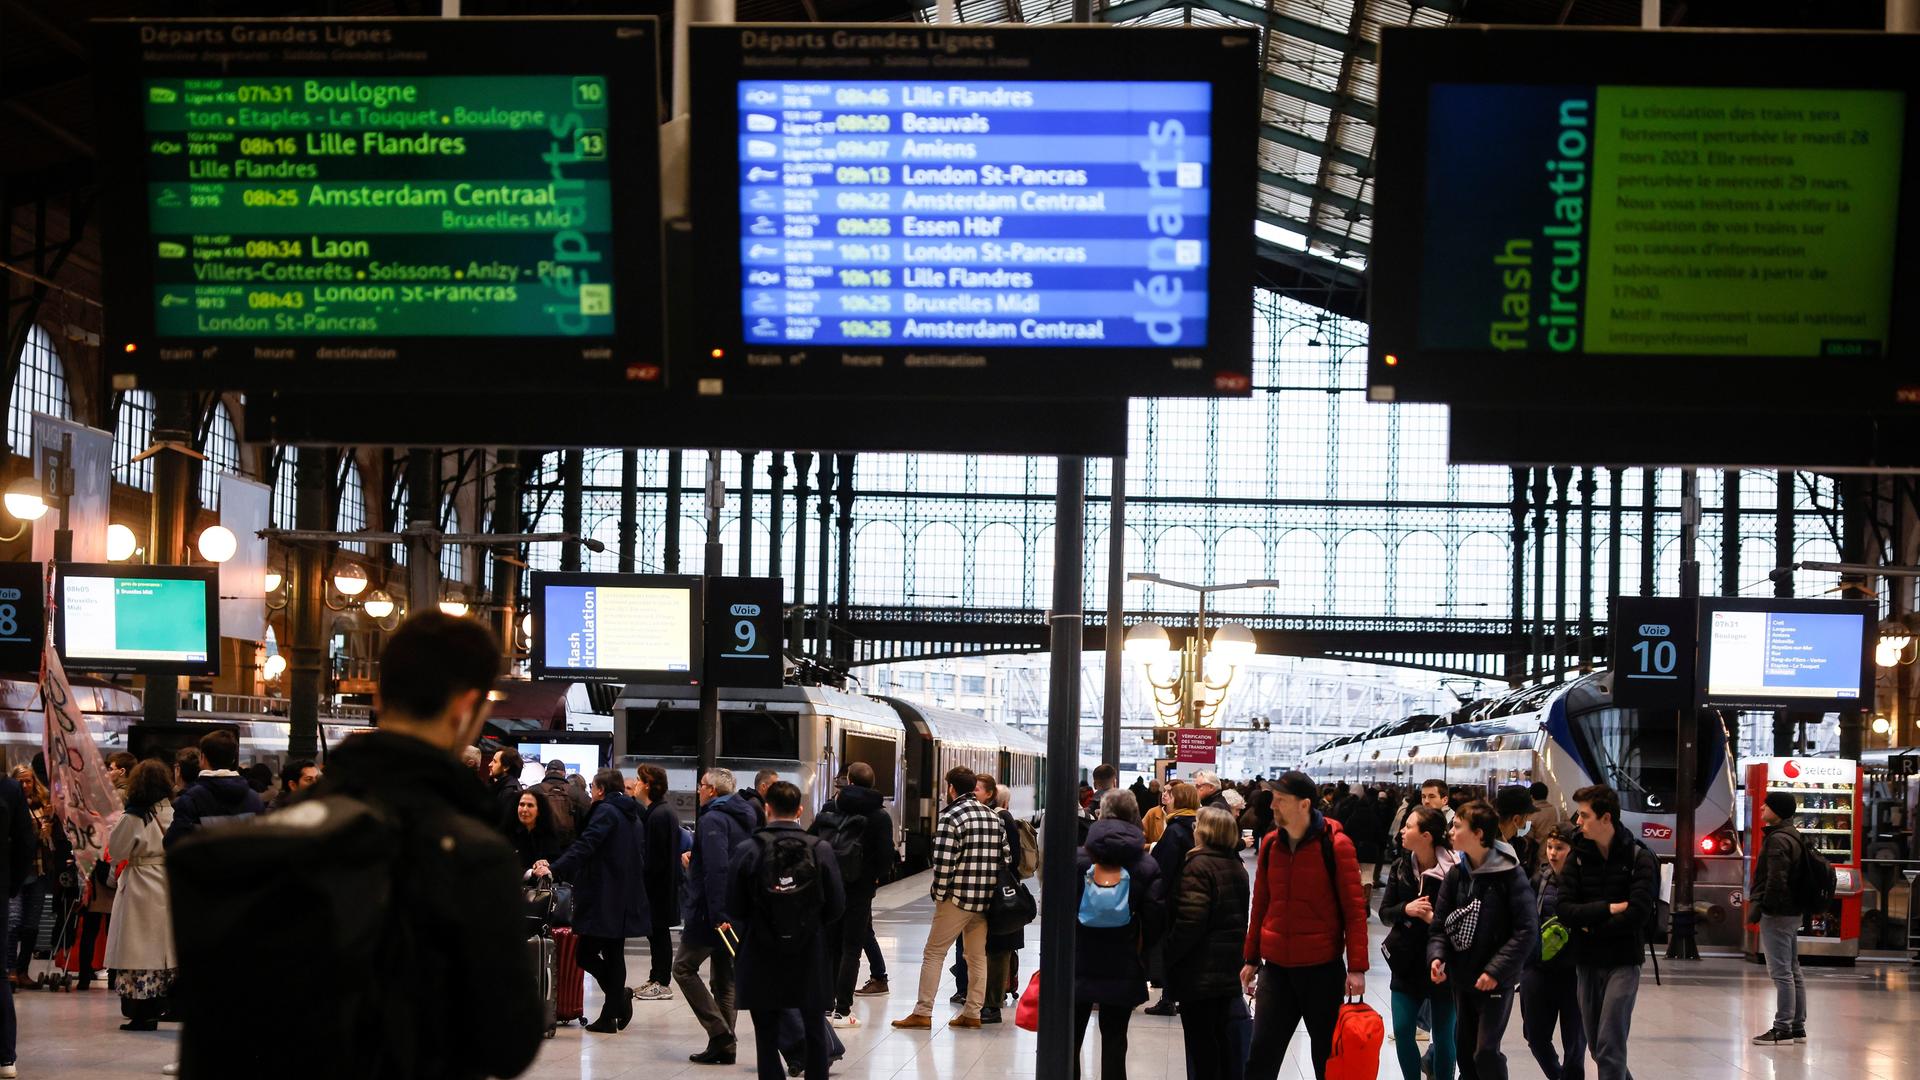 Frankreich, Paris: Reisende warten am Bahnhof Gare du Nord in Paris.